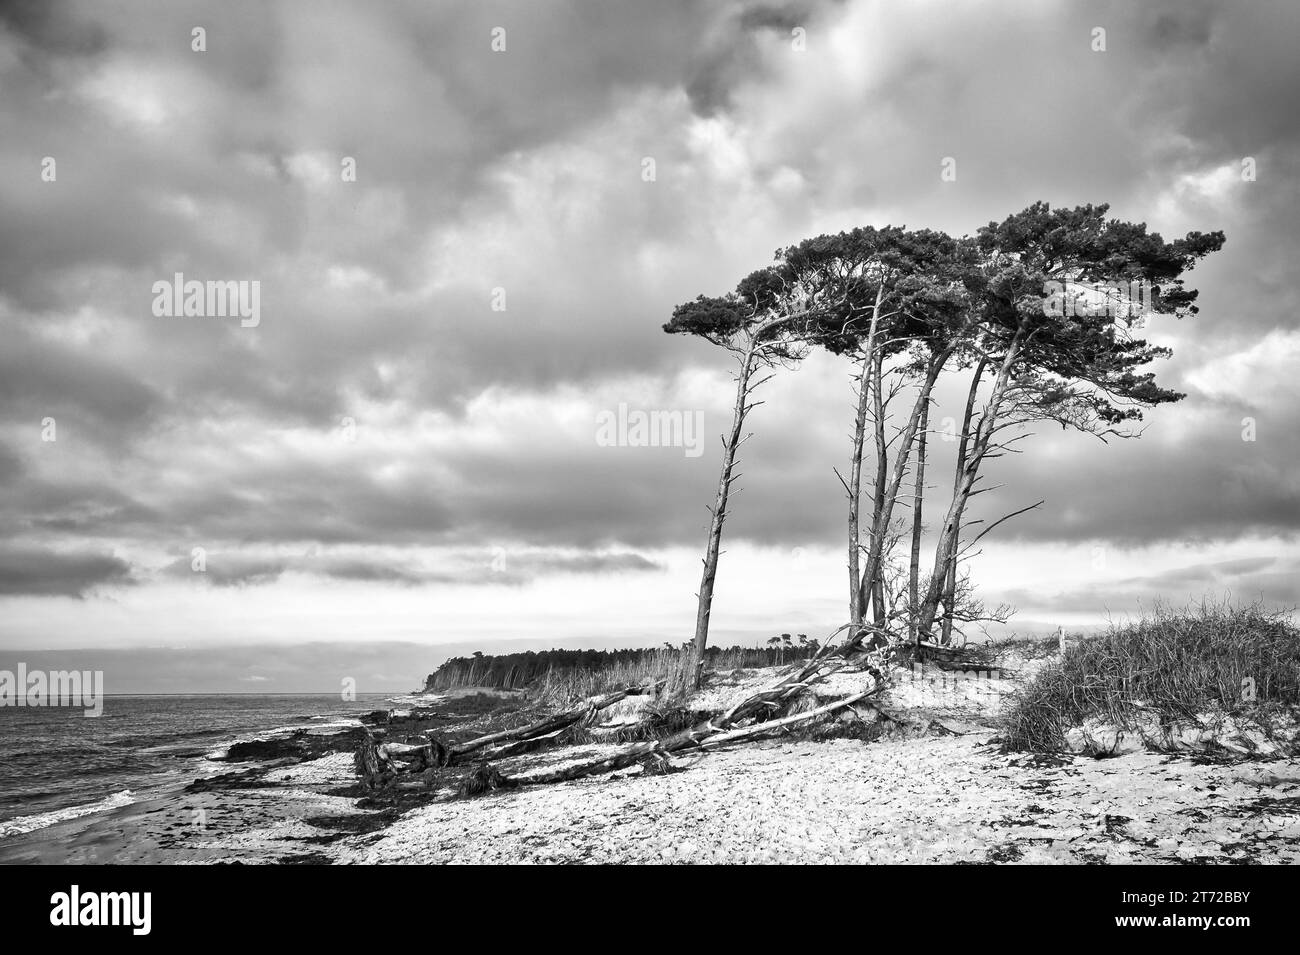 Spiaggia occidentale sul Mar Baltico in bianco e nero. Dal vento, i pini pendenti alla spiaggia attraversano le dune. Vista sul mare. Foto paesaggio Foto Stock